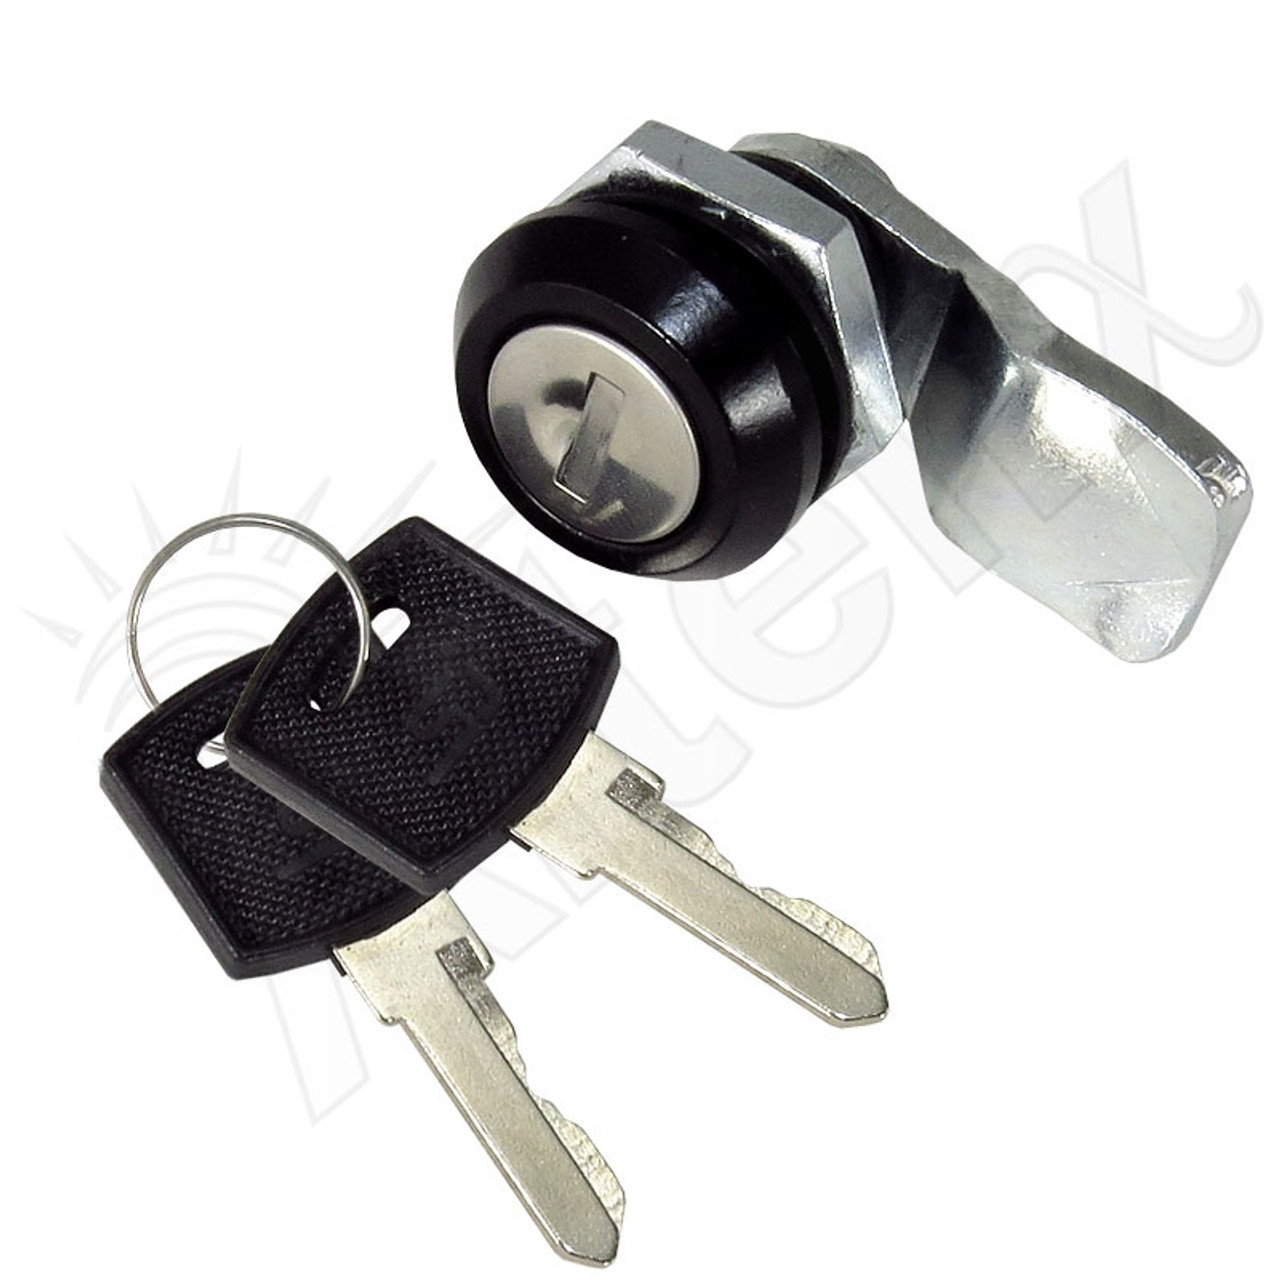 Locked keys in trunck. : r/Justrolledintotheshop